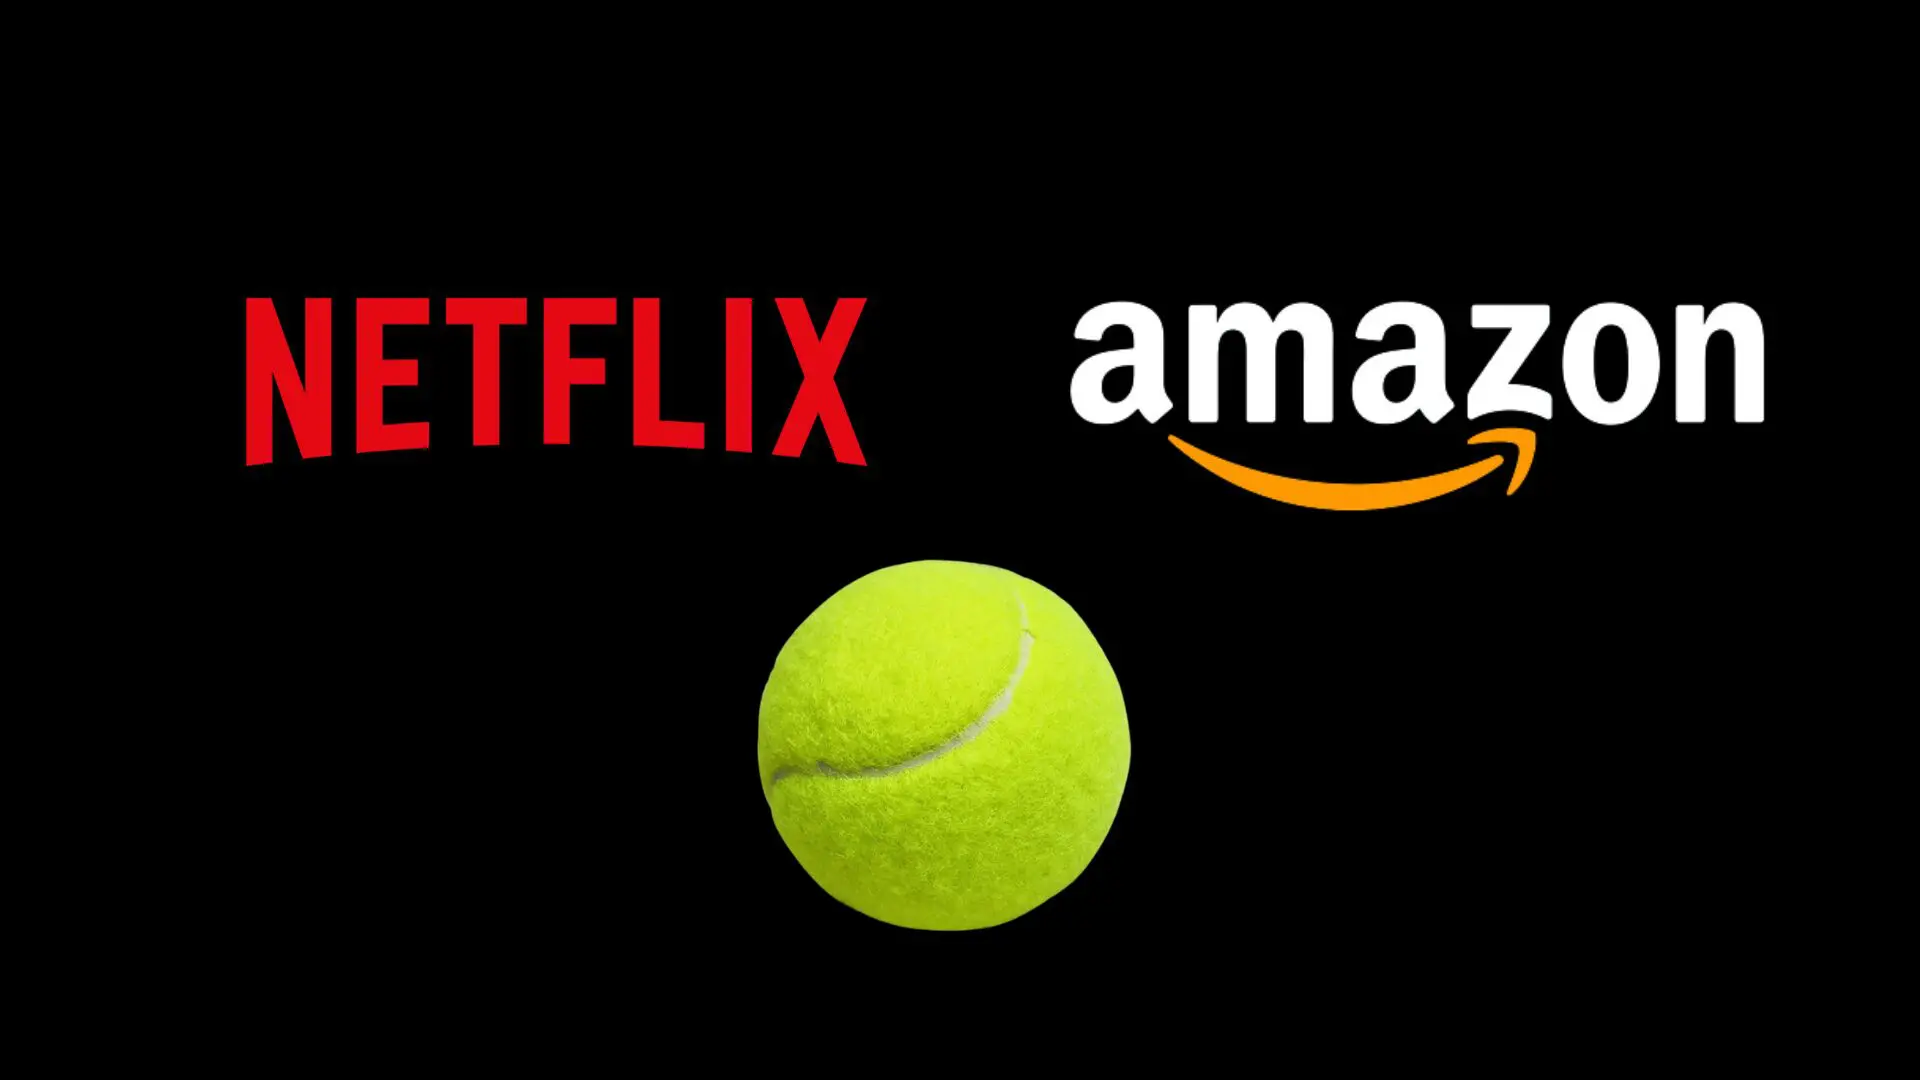 Netflix i Amazon darrere d'un circuit de padel ?